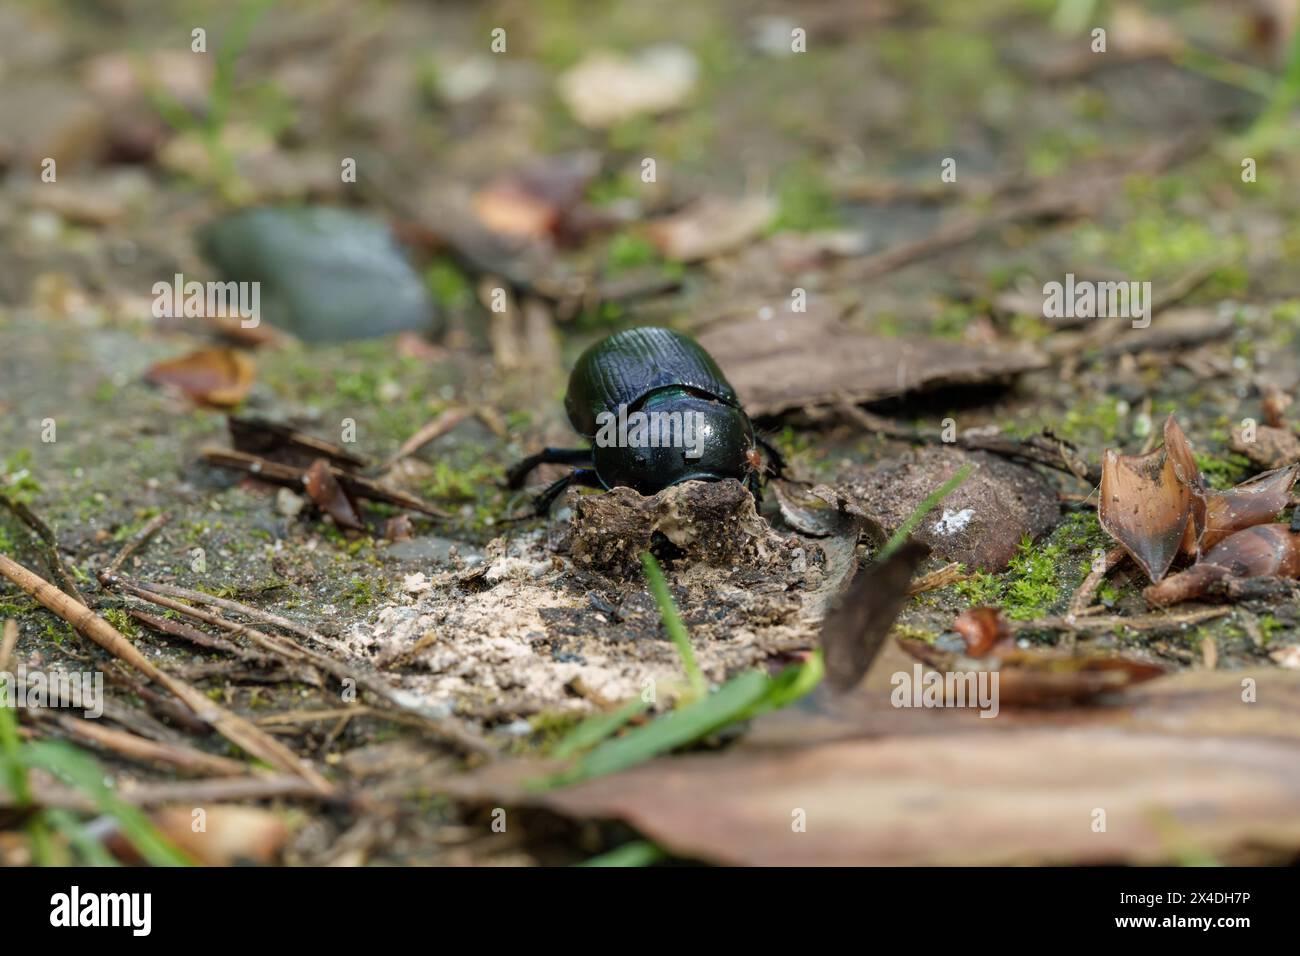 Un insecte arthropode, un coléoptère noir, rampant sur le sol dans l'environnement naturel, entouré de terre, de végétation, d'herbe et d'arbres Banque D'Images